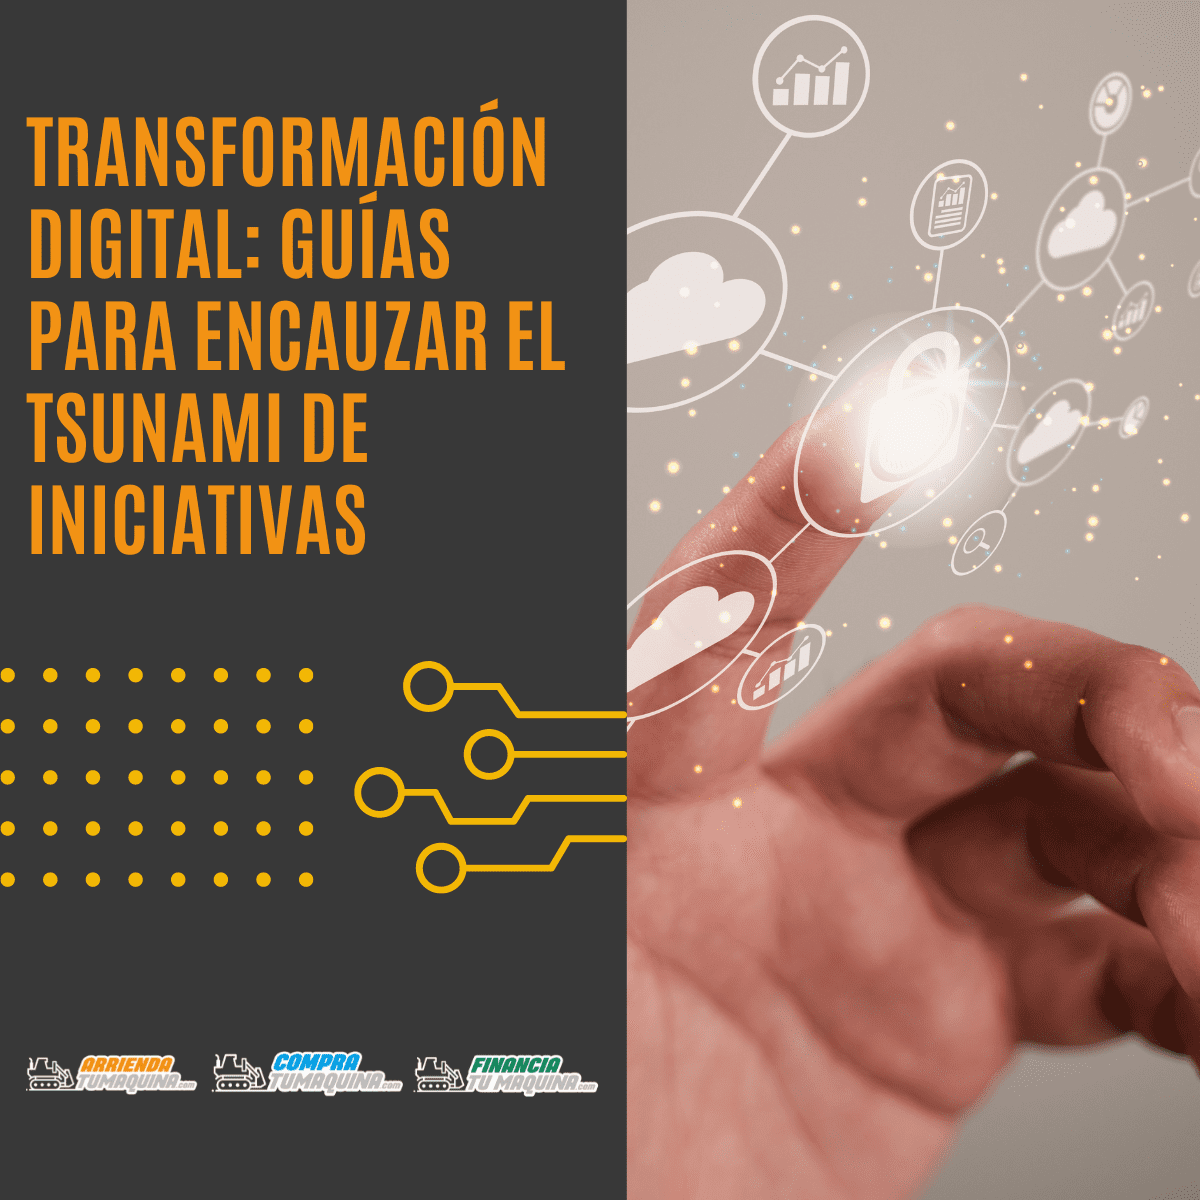 Transformación digital: Guías para encauzar el tsunami de iniciativas